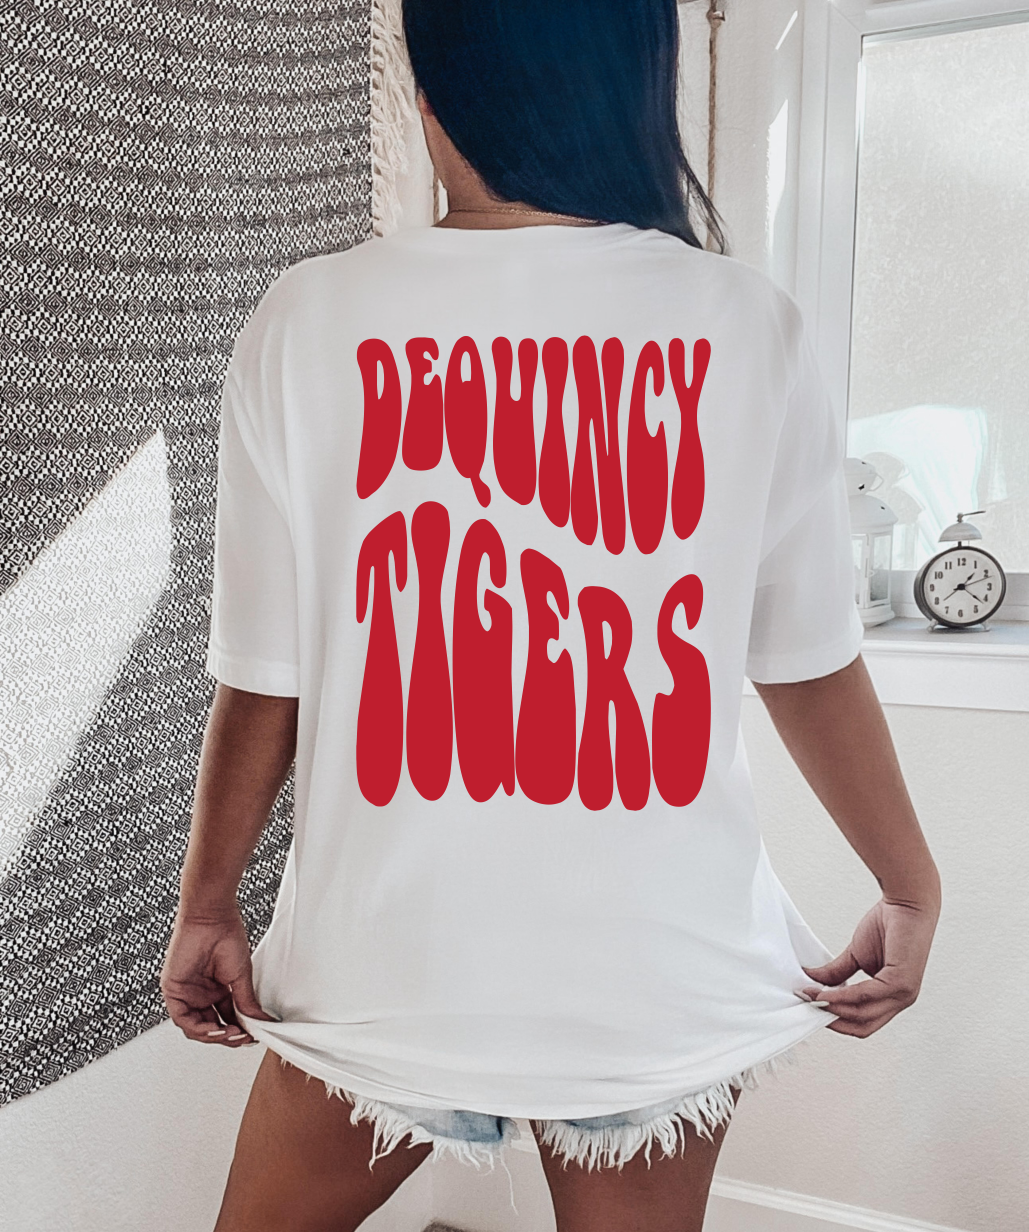 Deqincy Tigers Retro Tee